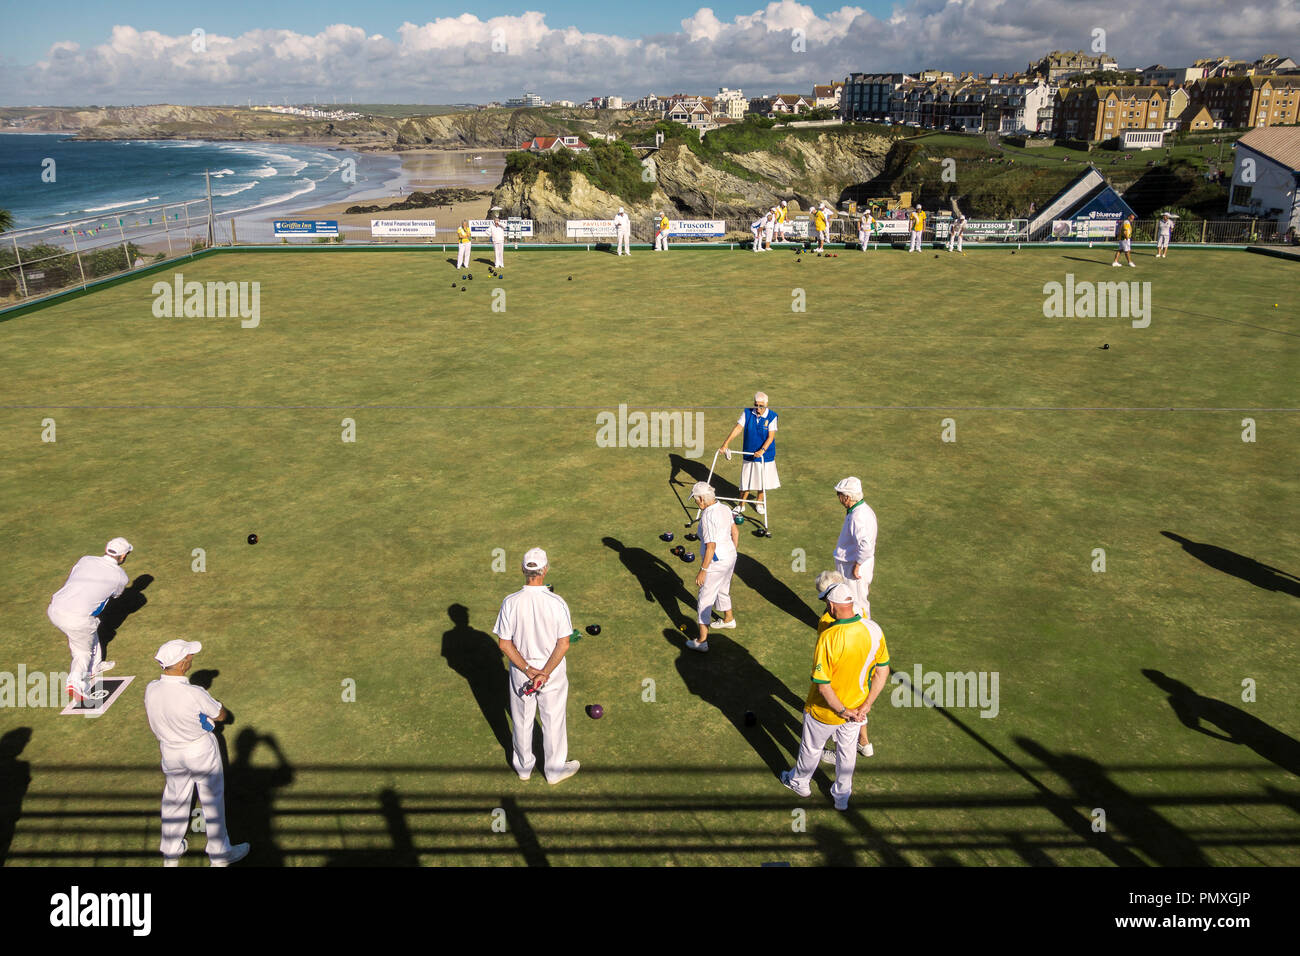 Newquay, Cornwall, Regno Unito. Un team di bocce giocando una partita sul campo da bocce, che si affaccia sulla città e sul mare Foto Stock